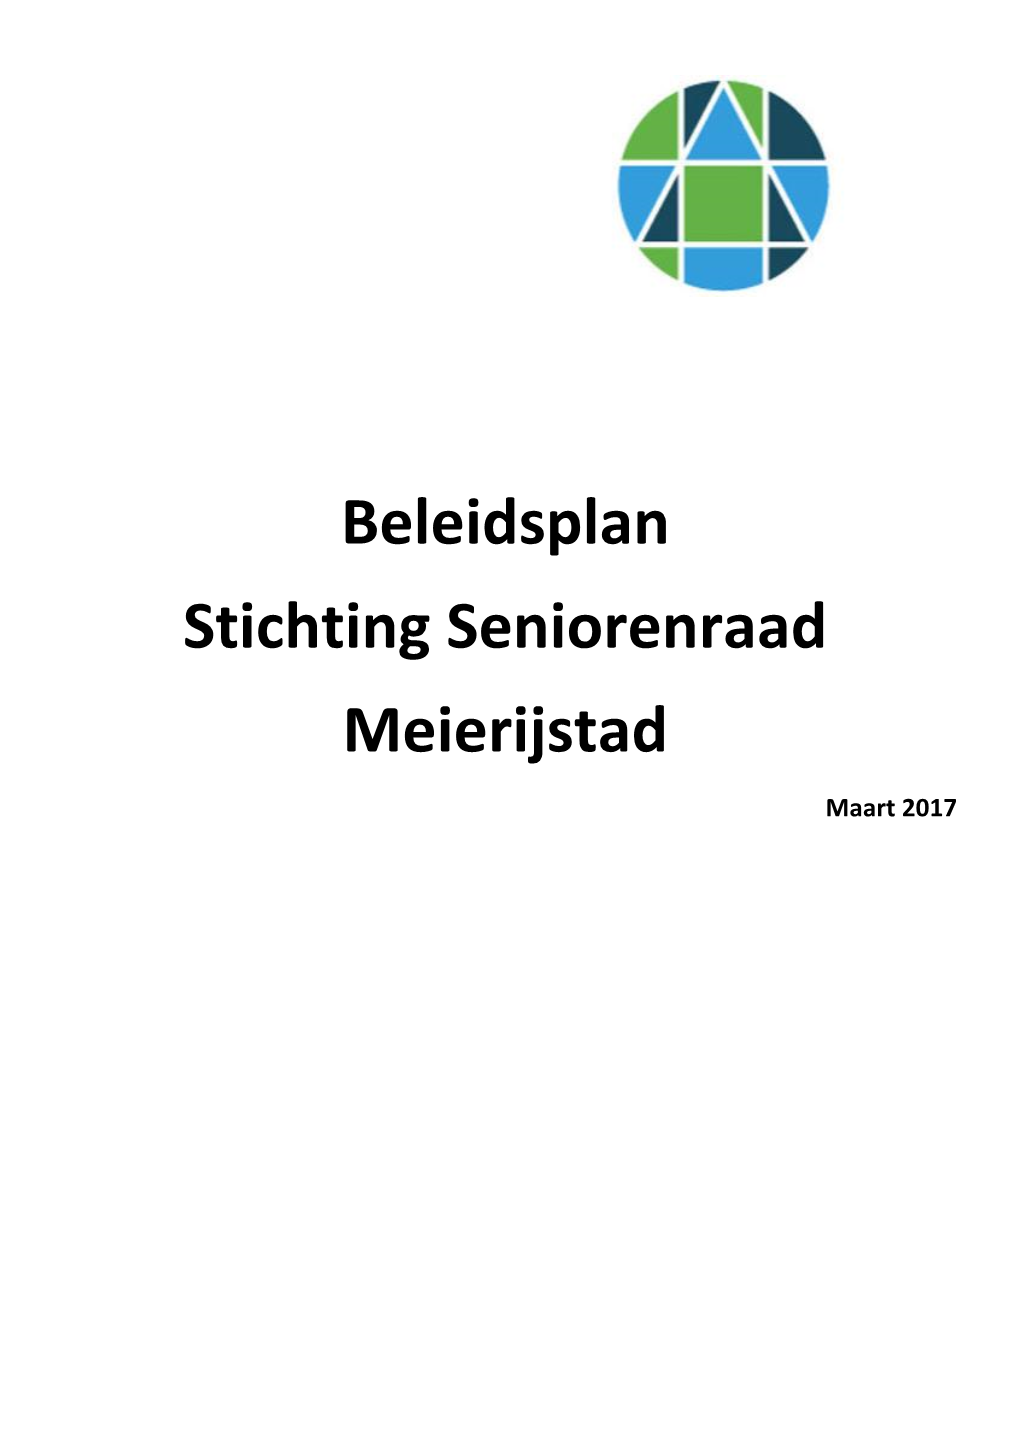 Beleidsplan Seniorenraad Meierijstad 6 Maart 2017